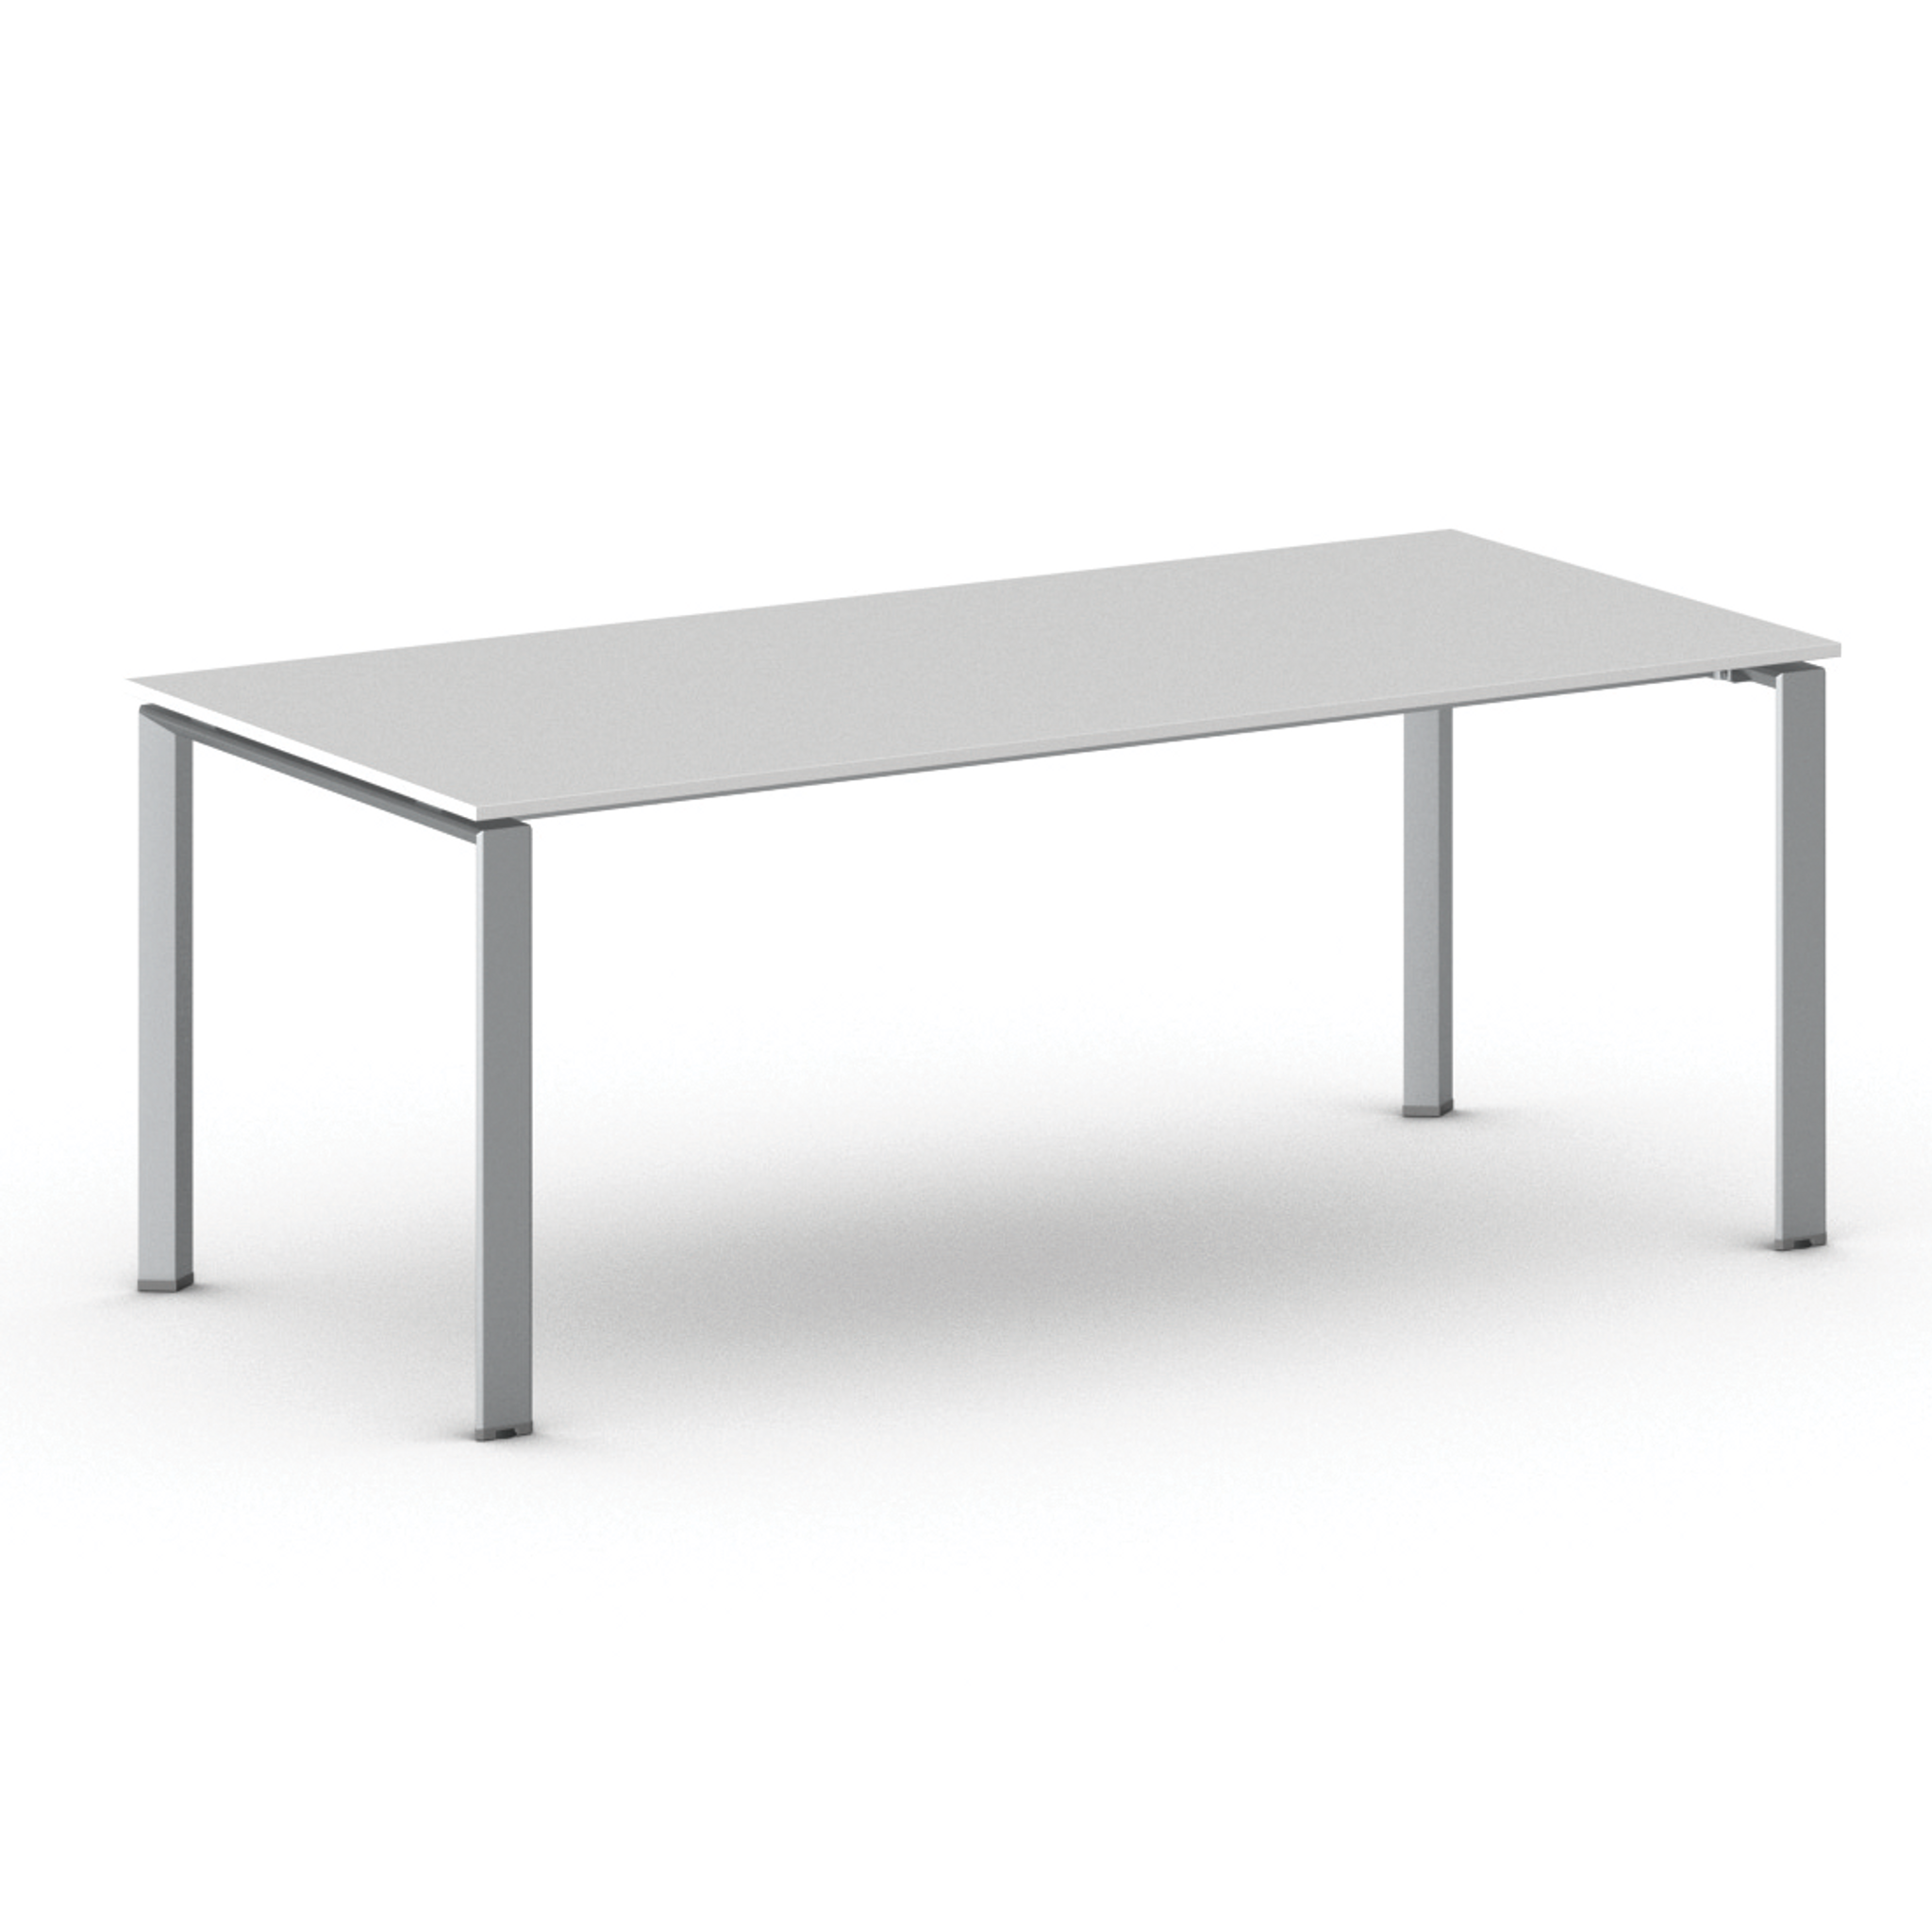 Konferenztisch, Besprechungstisch INFINITY 200x90 cm, weiß, graues Fußgestell